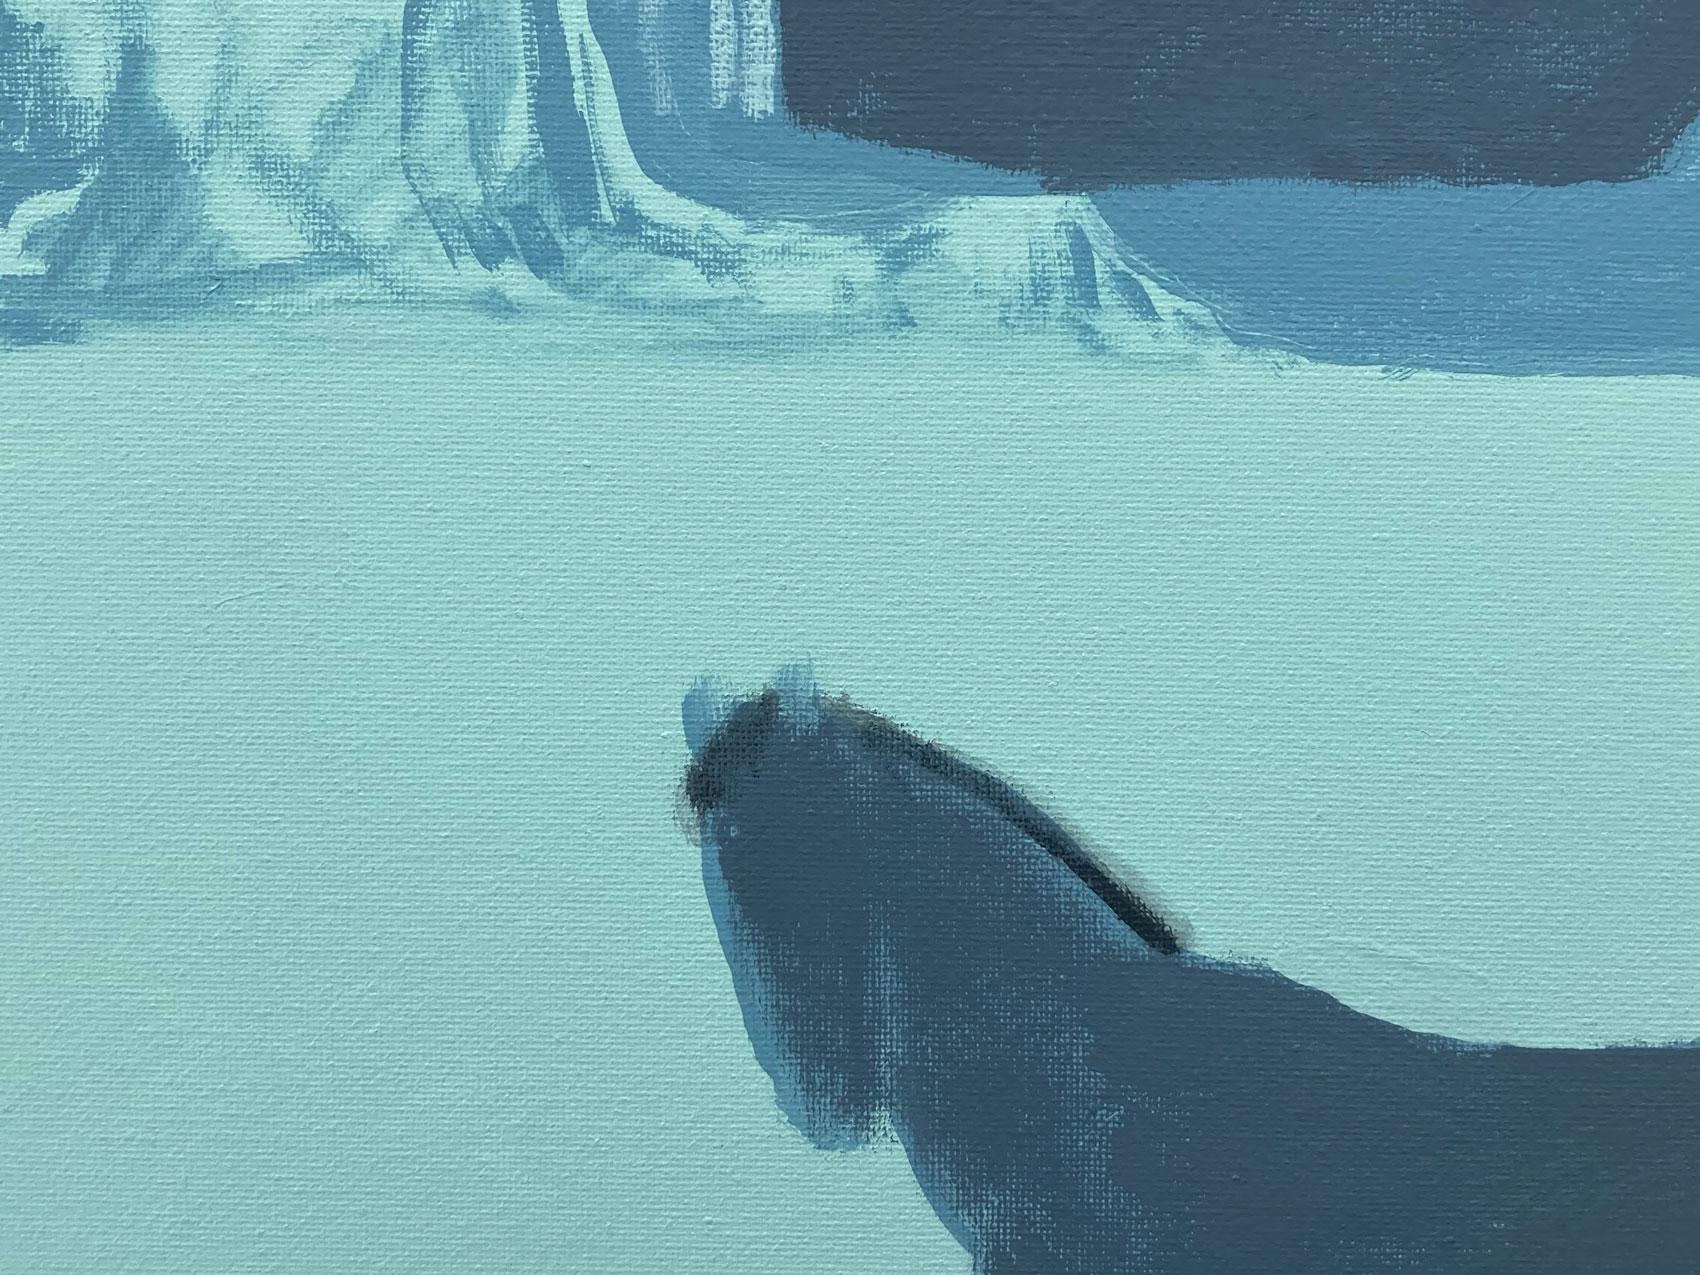 <p>Commentaires de l'artiste<br>L'artiste Nick Bontorno peint un cheval solitaire dans un vaste canyon. Les tons bleus pâles et la représentation minimale donnent une résonance détendue au paysage pastoral aride. Son approche picturale crée une